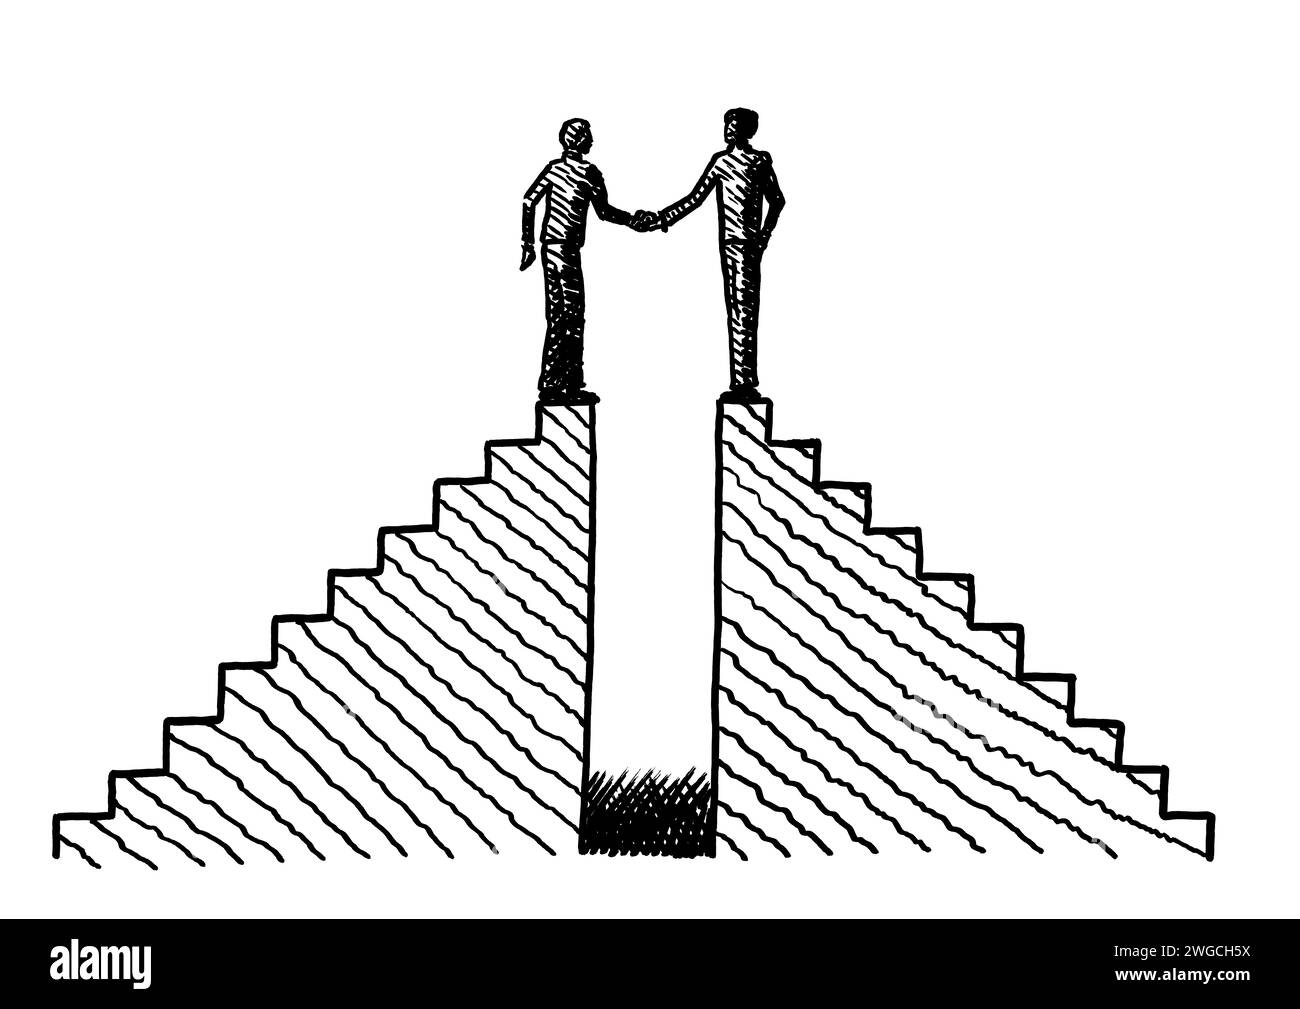 Handgezeichnetes Linienbild von zwei Männern auf zwei Treppen, die sich die Hände schütteln. Geschäftskonzept für Fusion, Partnerschaft, Zusammenarbeit, Deal, Vereinbarung, kompa Stockfoto